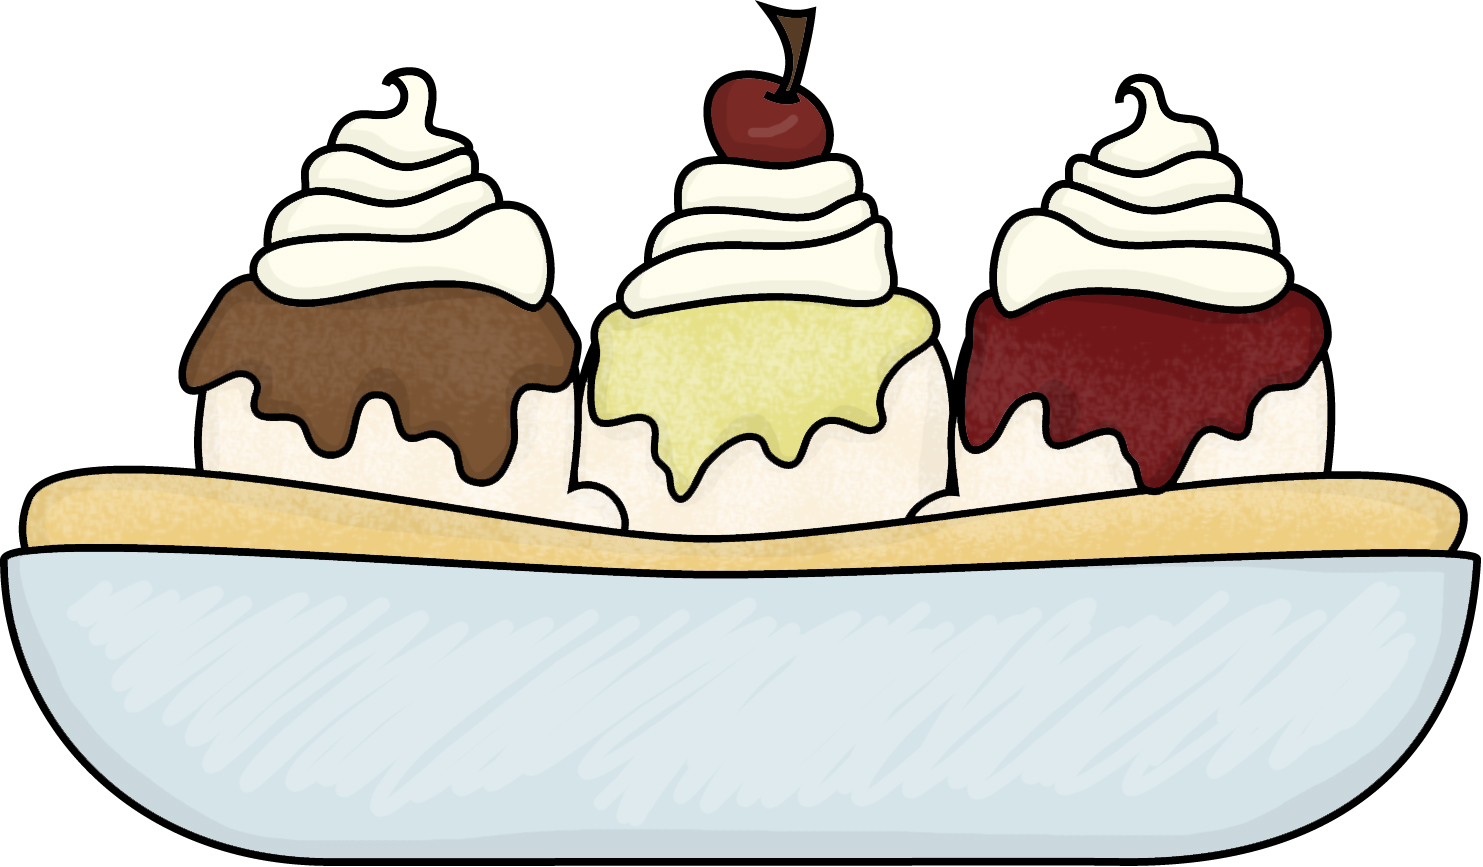 Ice Cream Bowl Clipart.